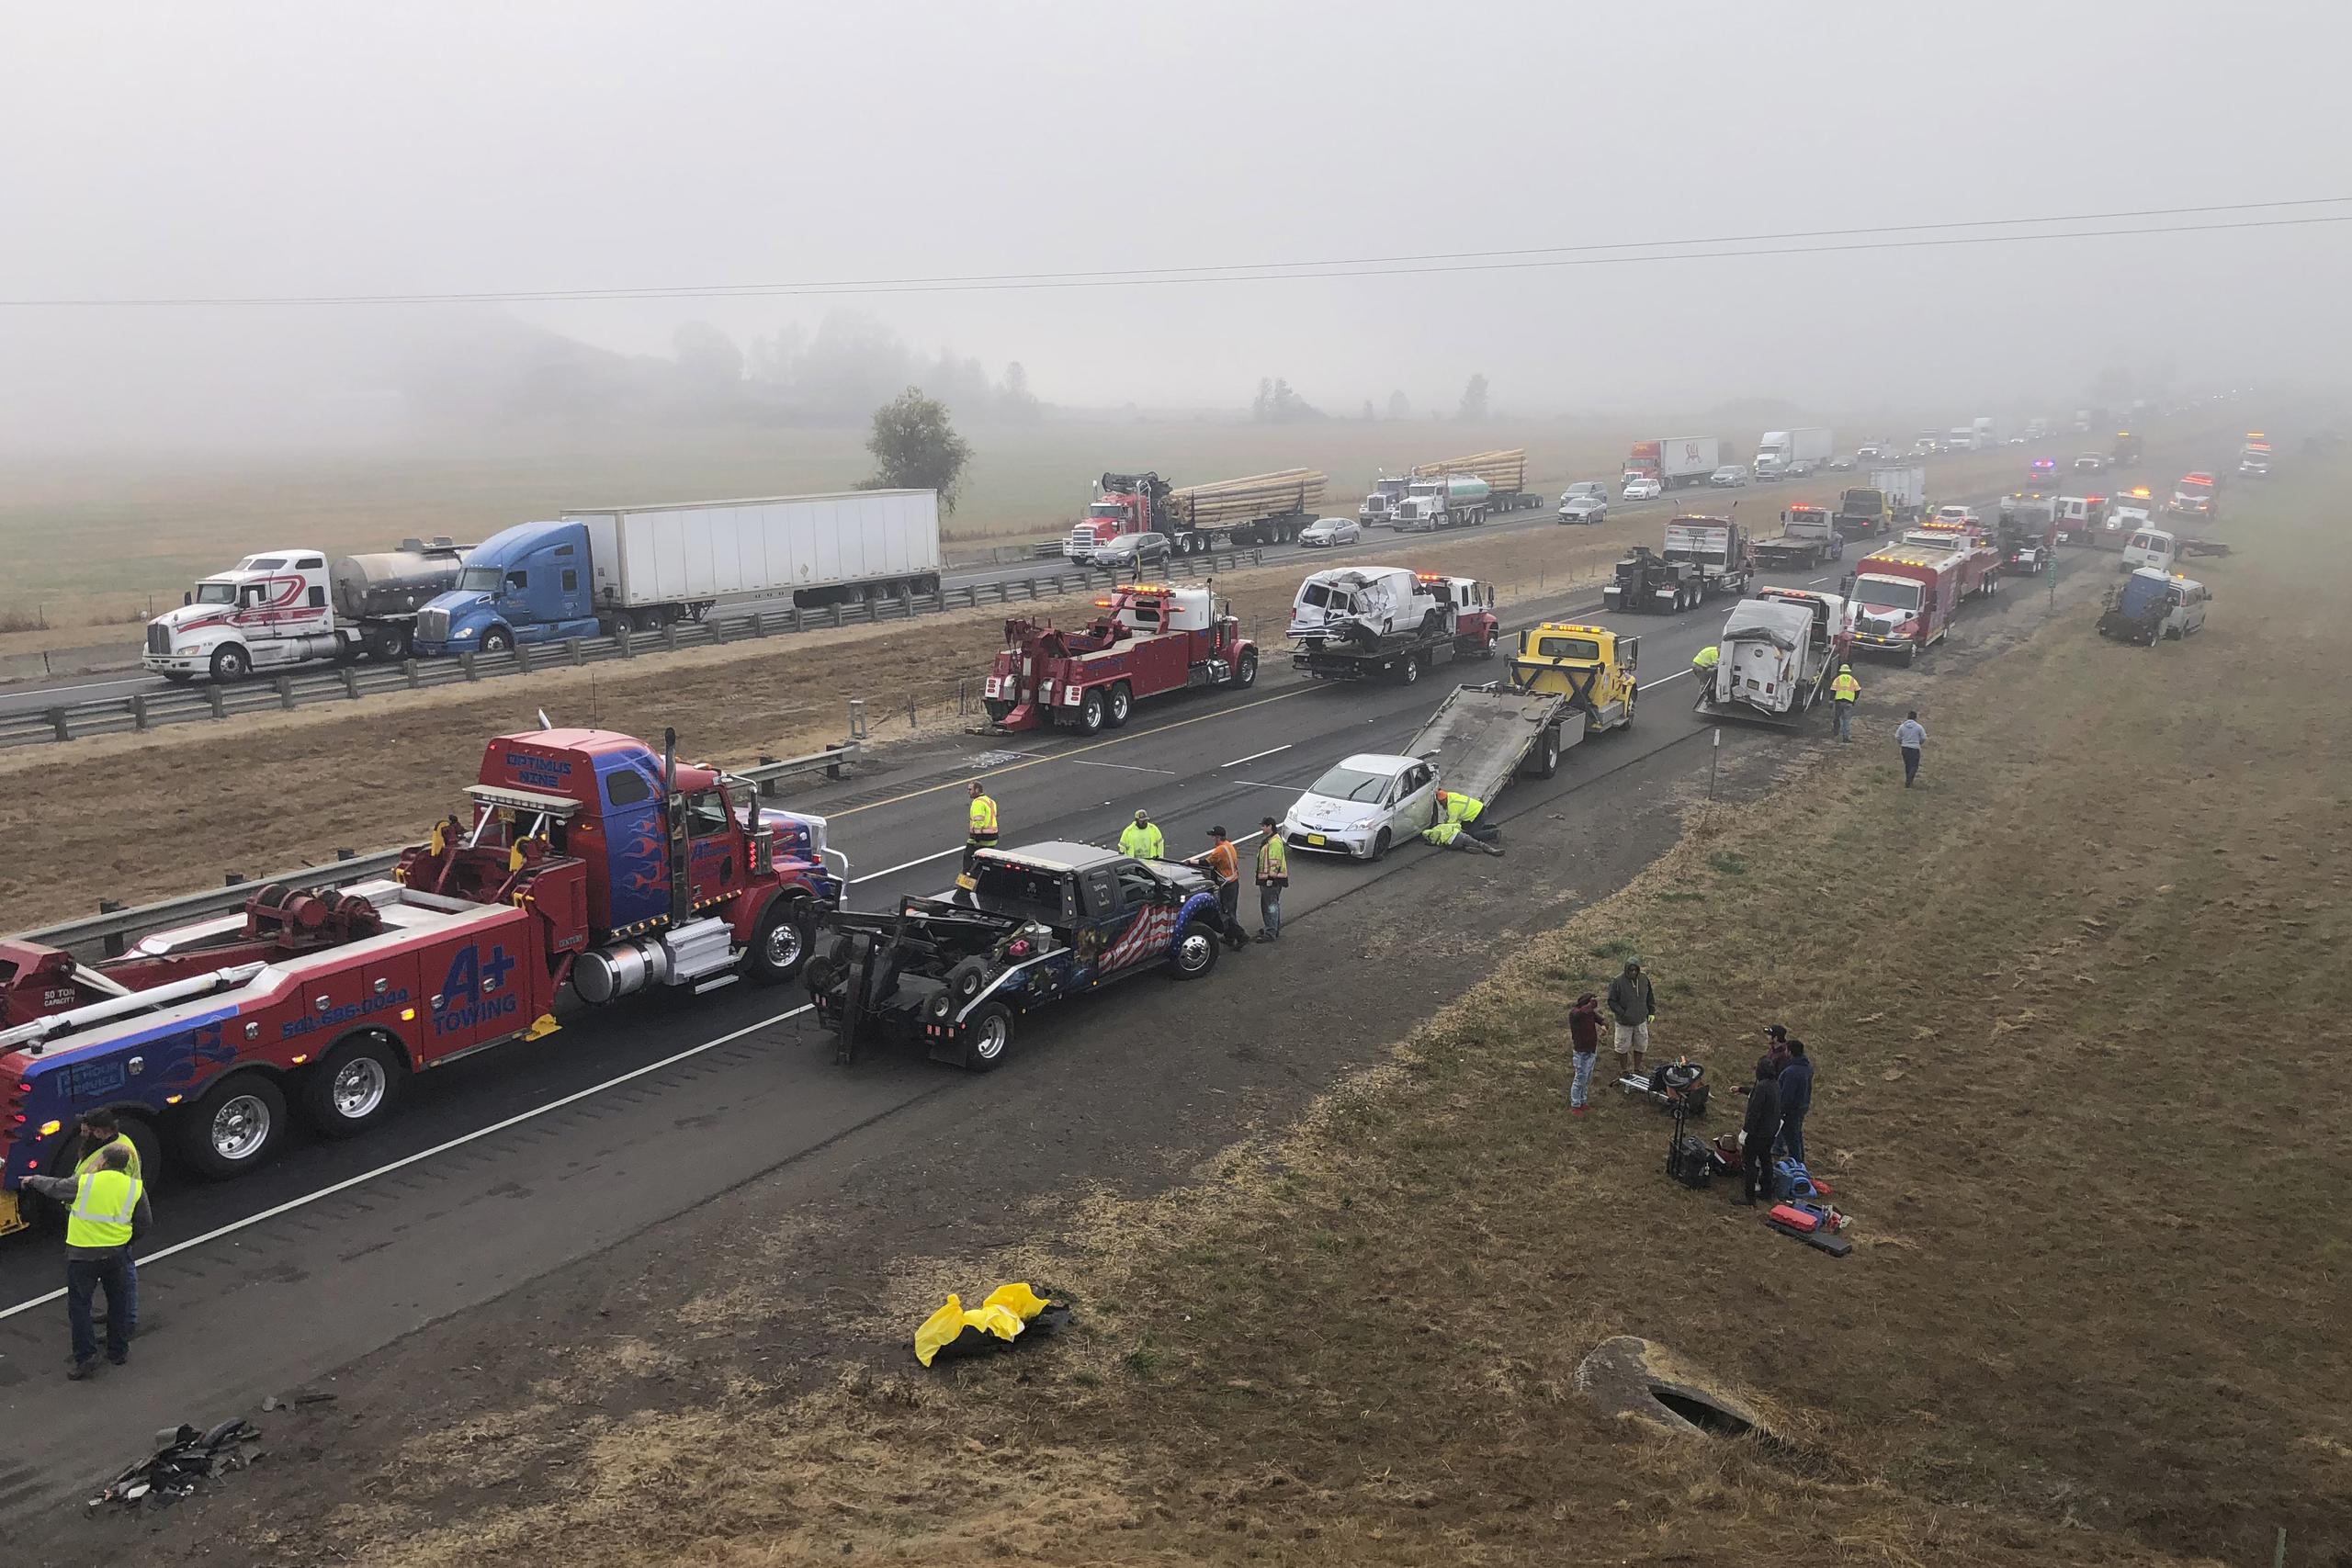 Lugar en el que una persona murió en un choque entre varios vehículos en medio de una densa neblina en la autopista interestatal 5, al norte de Eugene, Oregon.